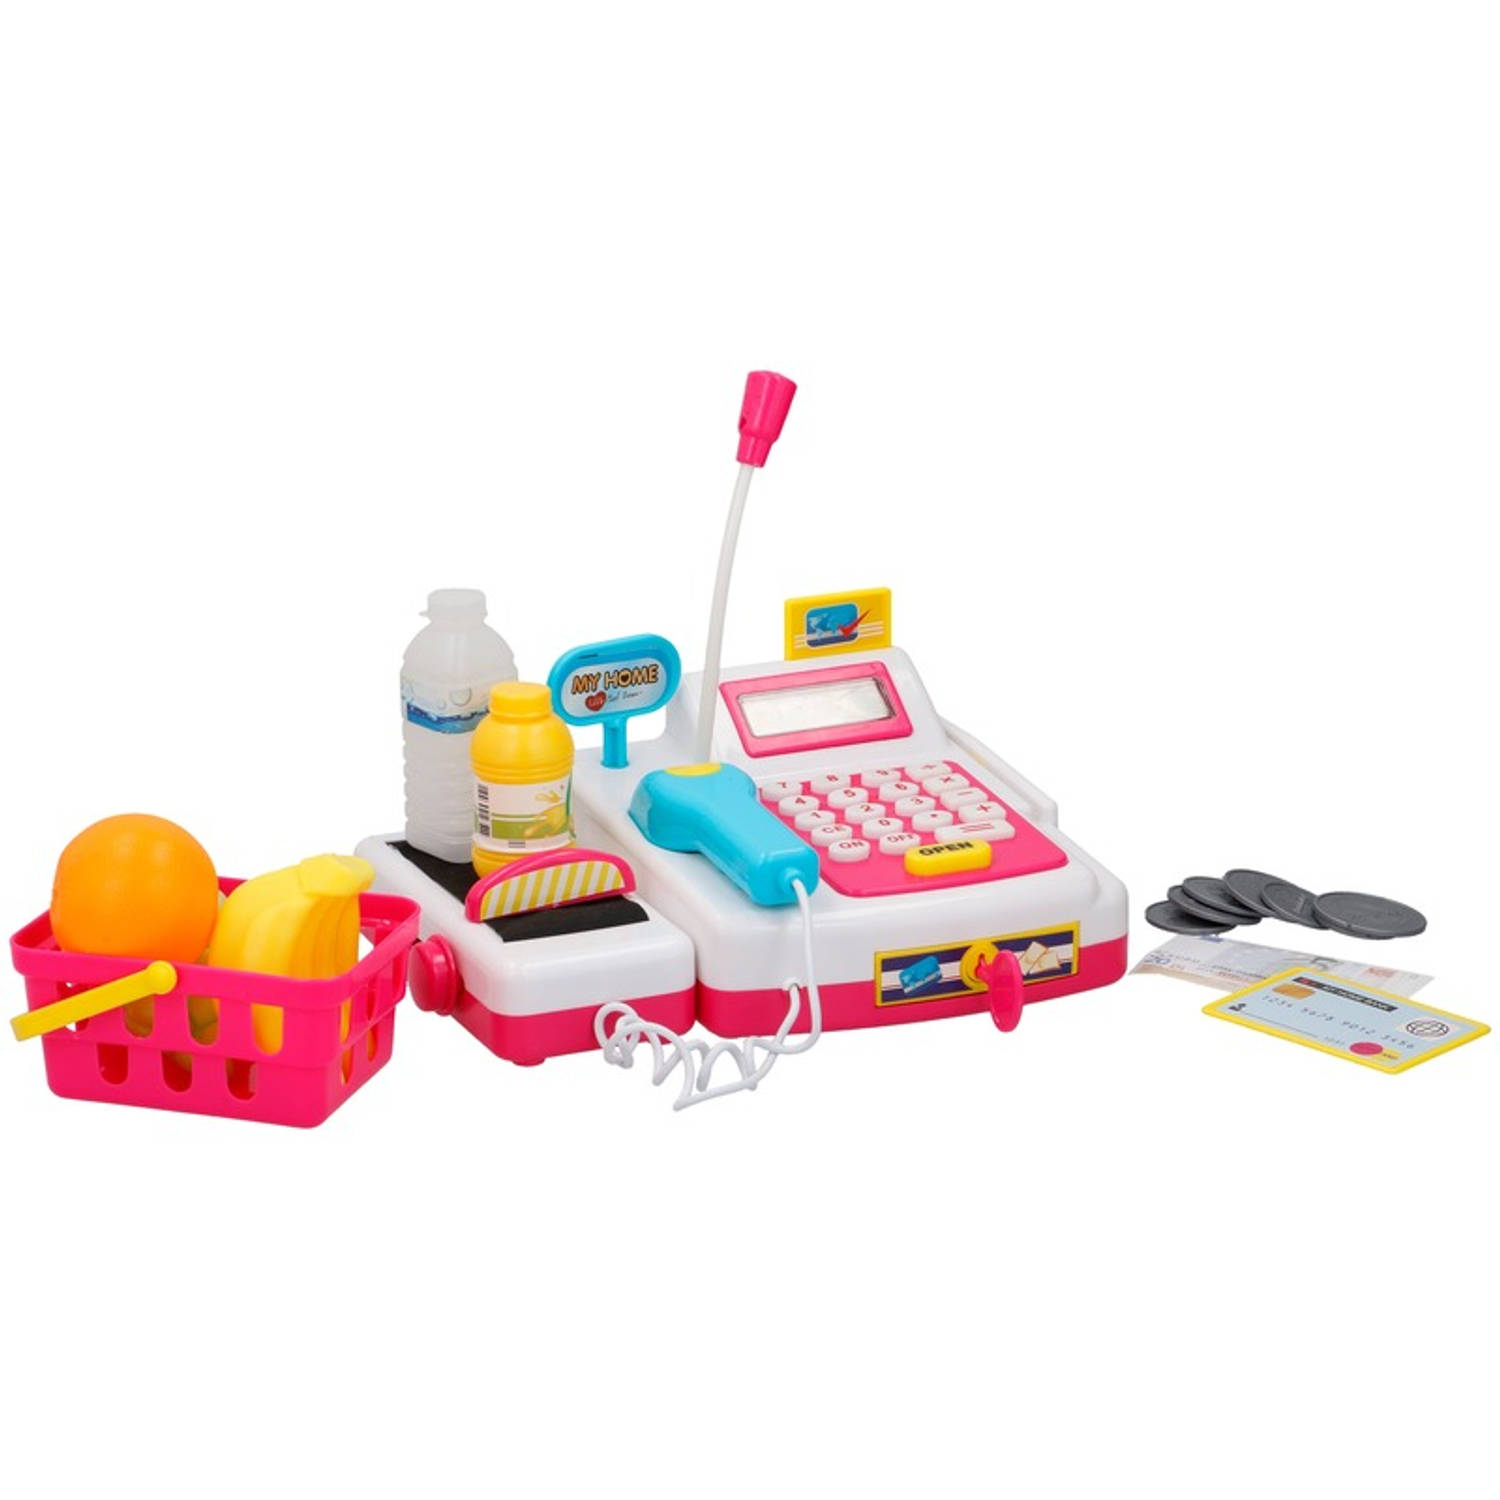 Speelgoed kassa met accessoires voor meisjes Speelkassa met boodschappen Winkeltje spelen kinderspee